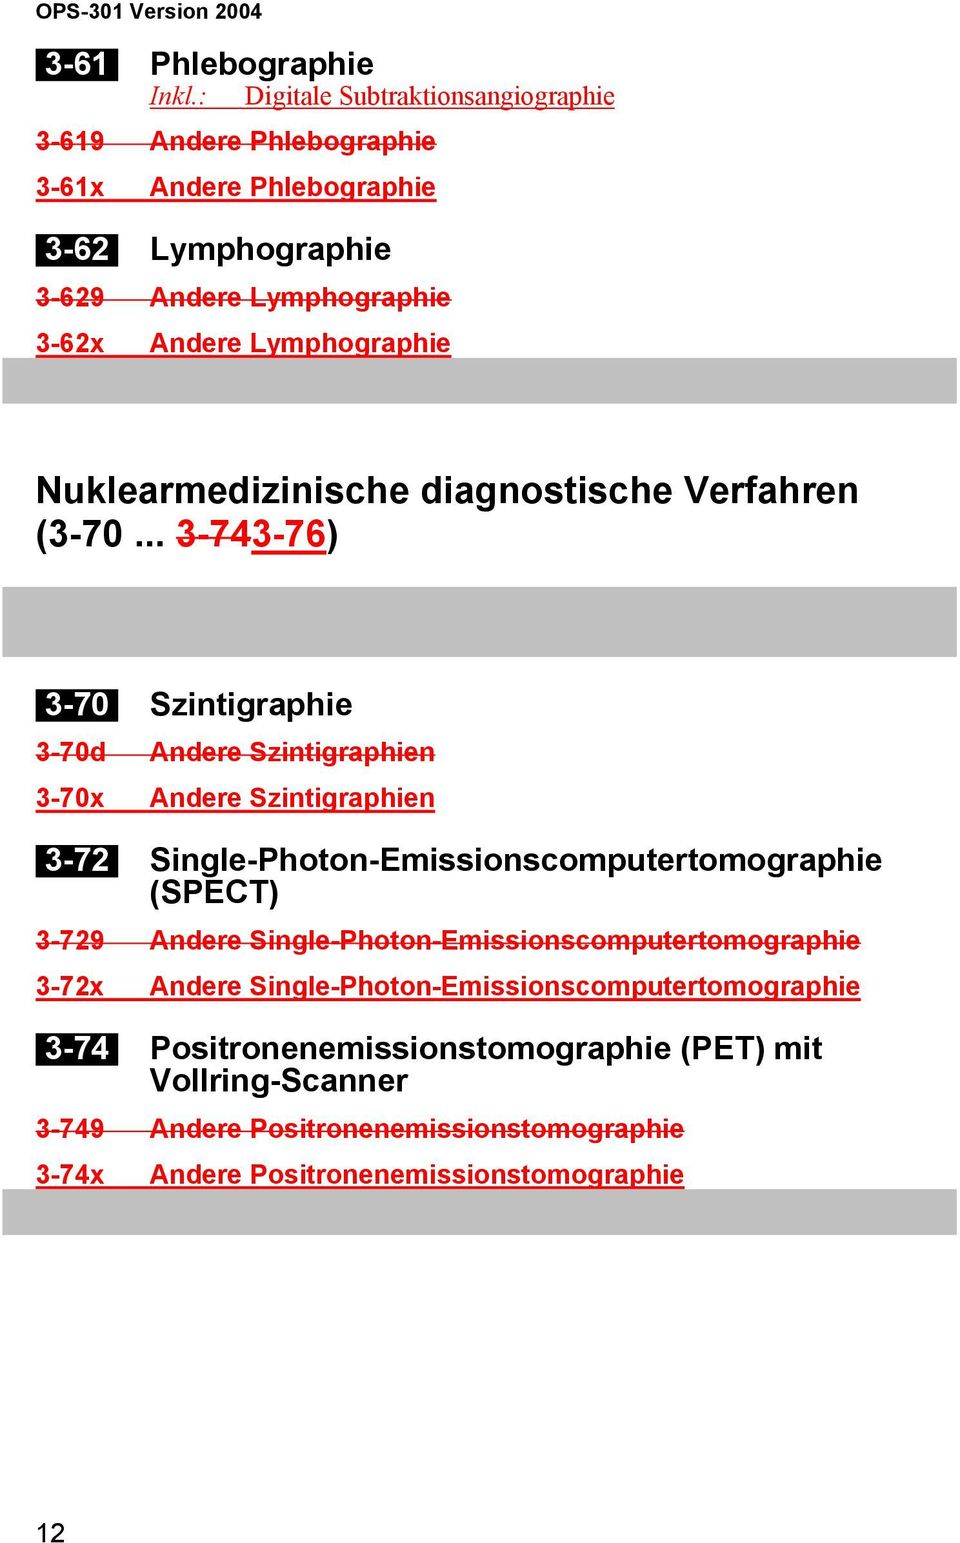 Nuklearmedizinische diagnostische Verfahren (3-70.